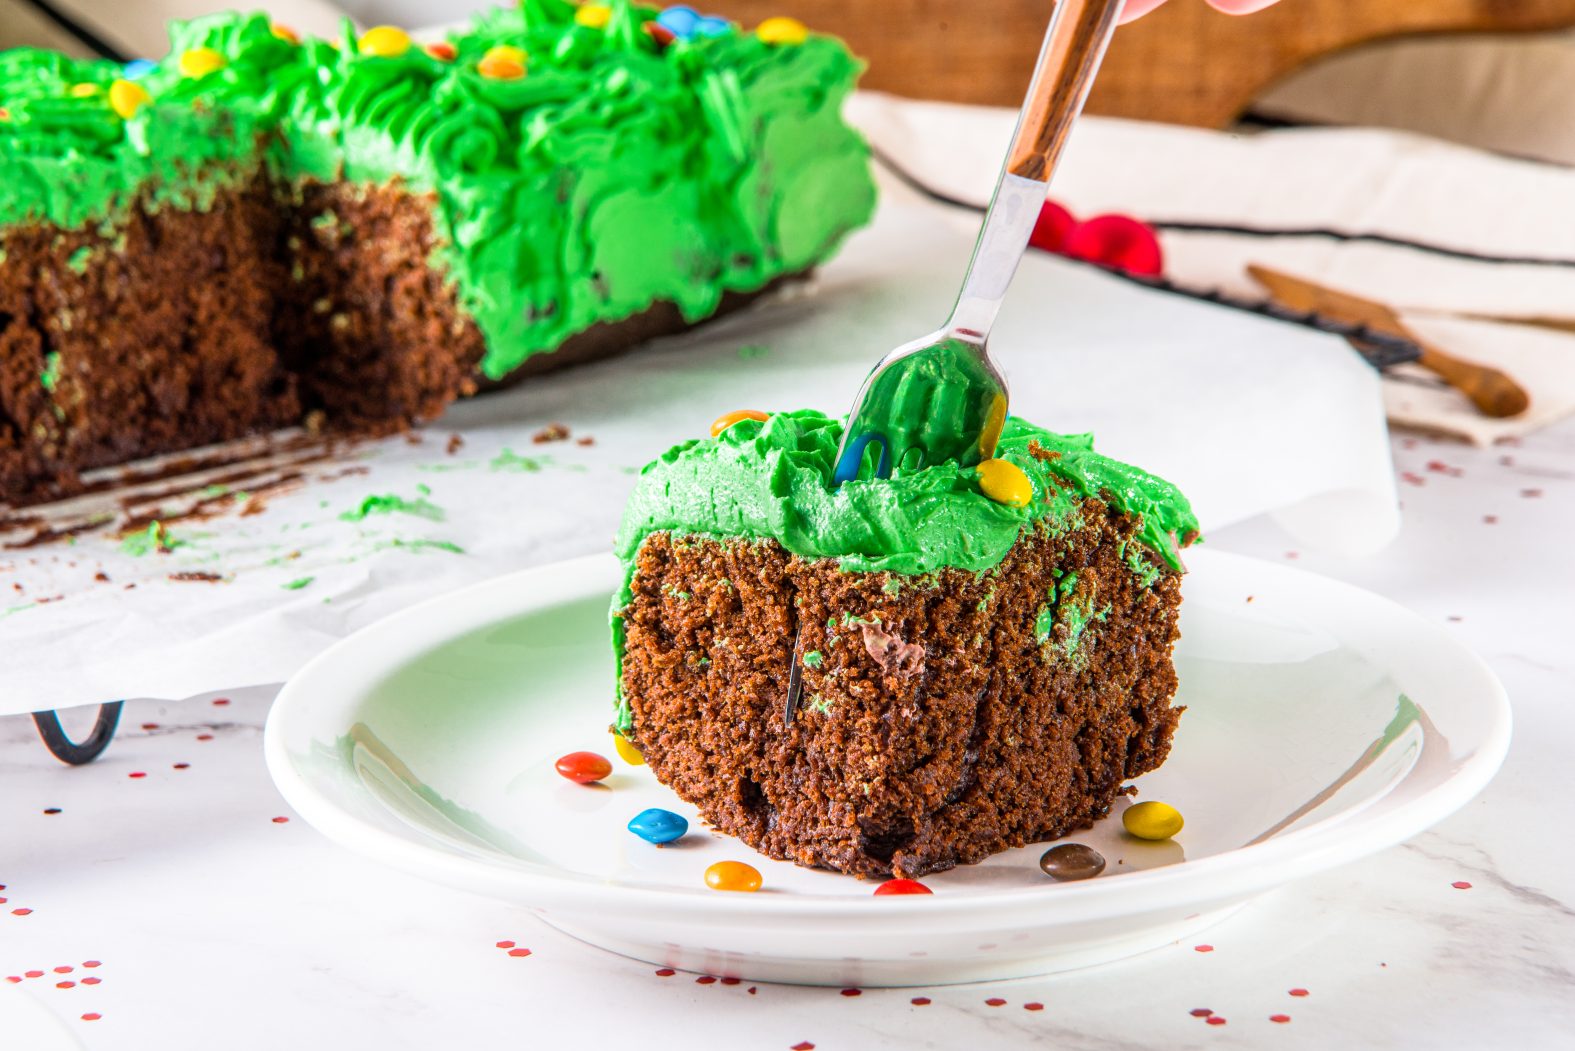 Wilton, Kitchen, Green Christmas Tree Cake Pan Wilton Great Condition  Takes A 2layer Mix